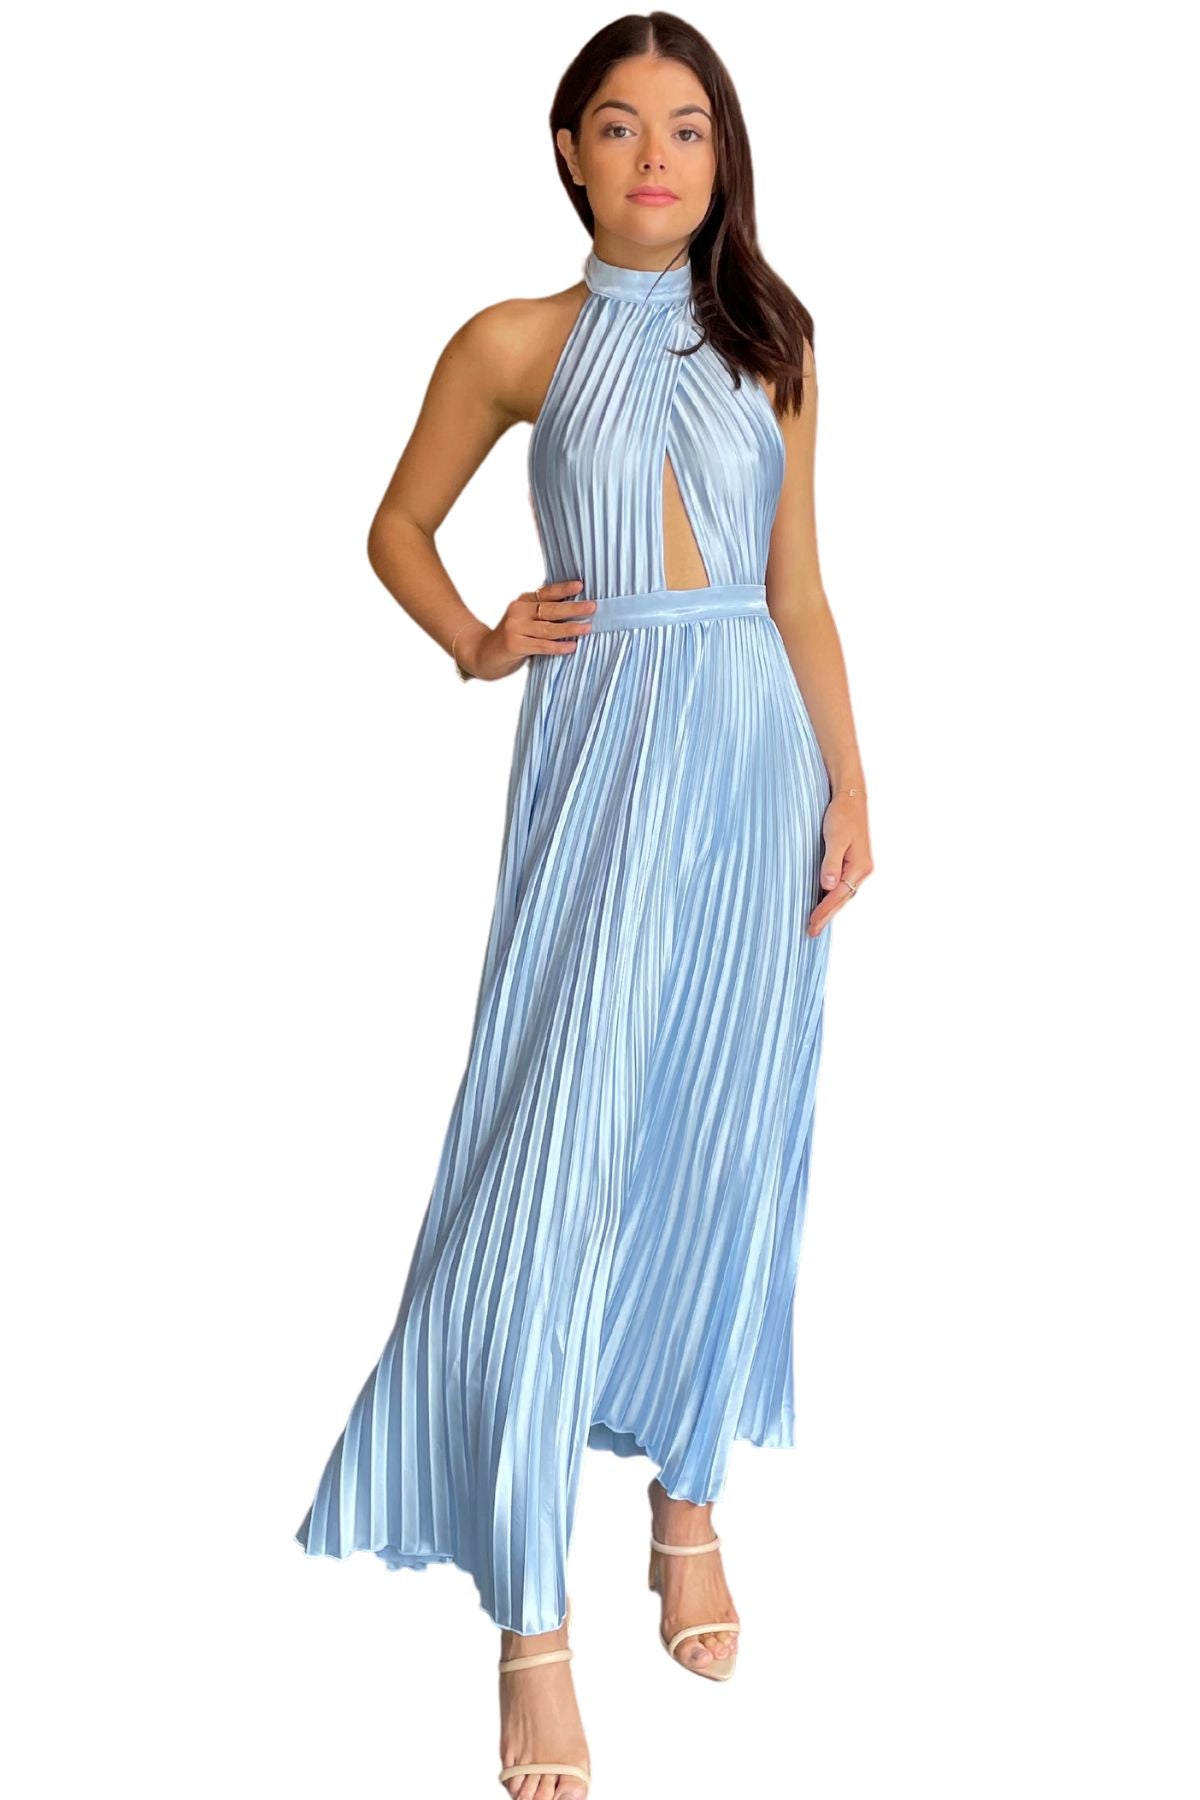 L'Idee L'IDEE Soirée Renaissance Gown (Sky Blue) - RRP $349 - 1_f75d95b3-9a93-4a2c-b751-a0decc86b34b.jpg